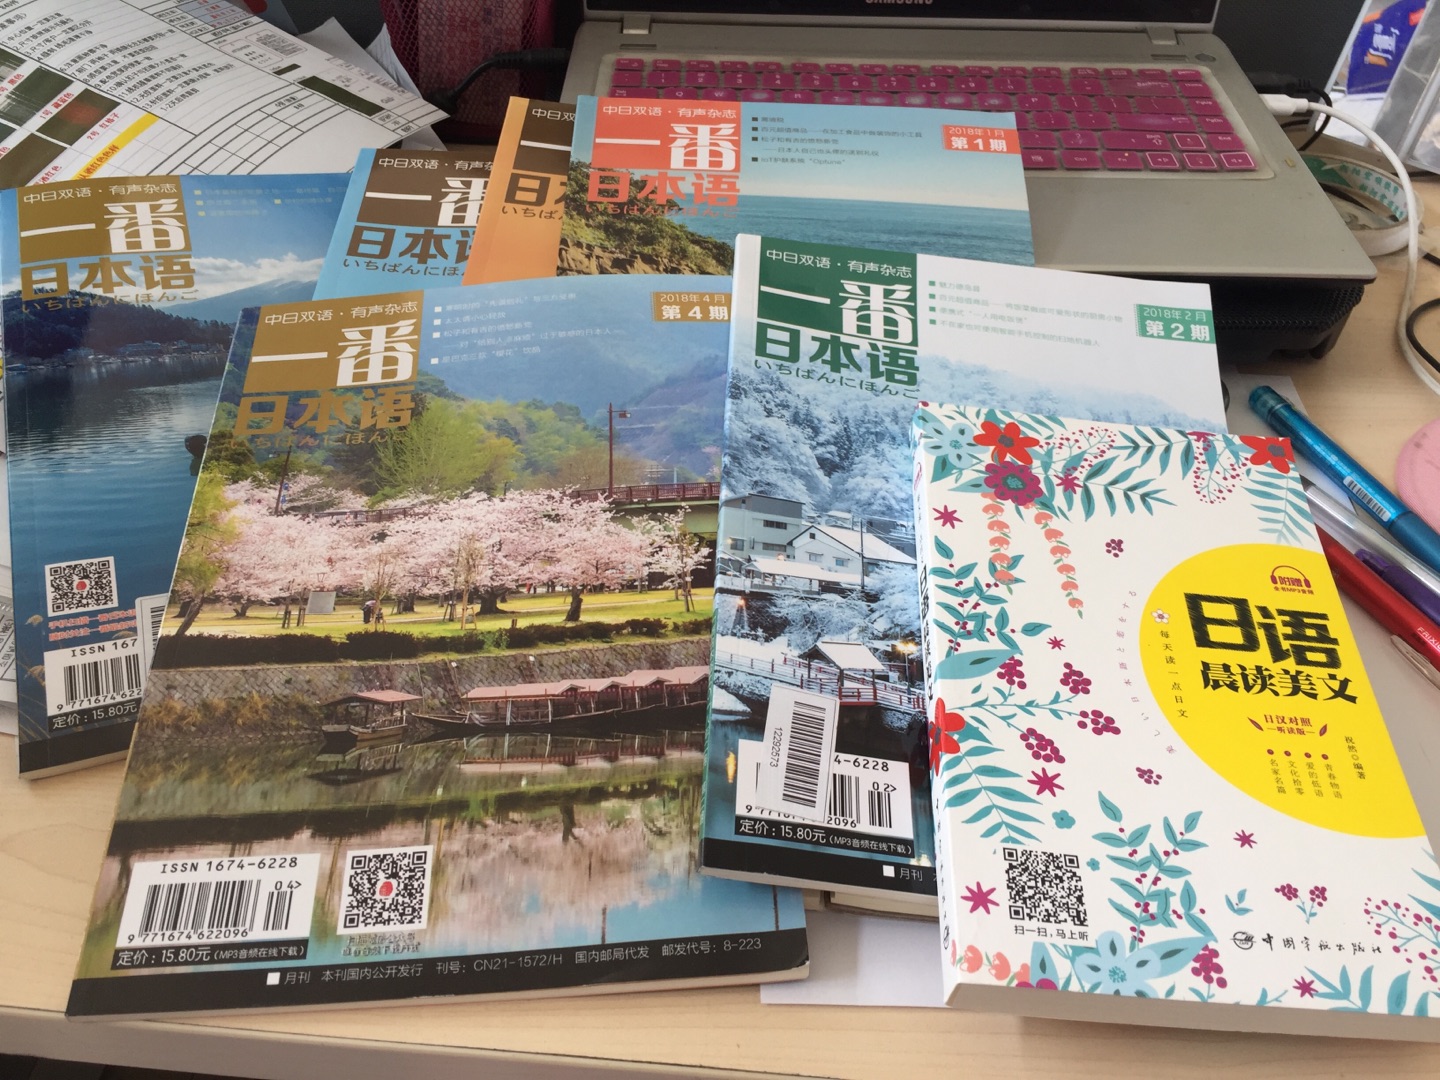 我很喜欢这份杂志，内容丰富，且中日对照，辅助学习日语。